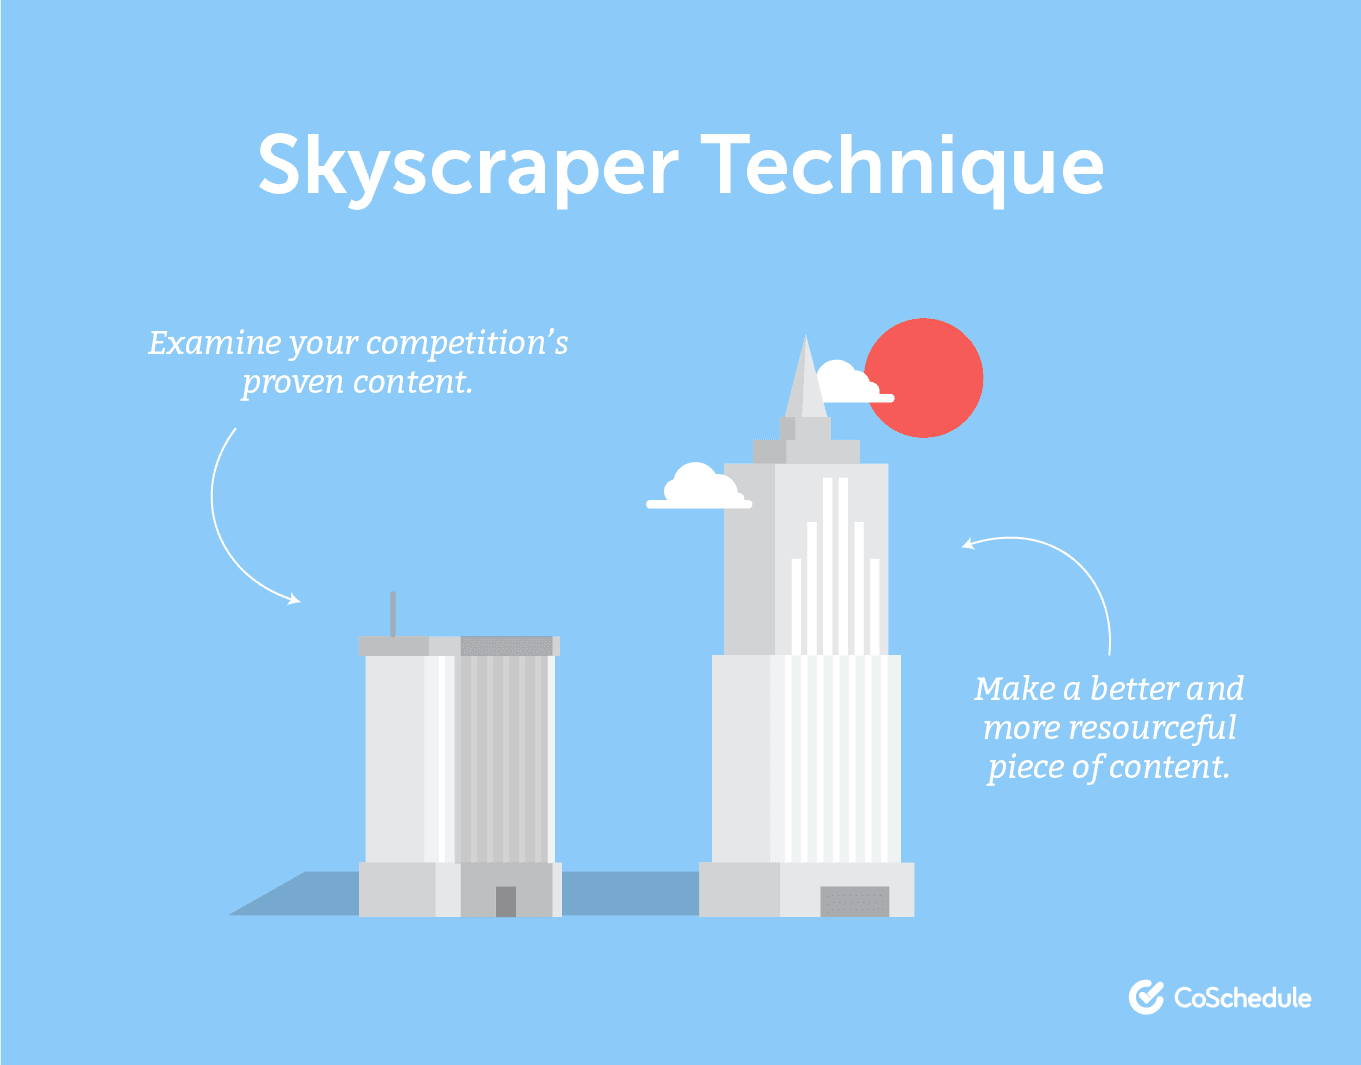 Skyscraper technique for inbound marketing